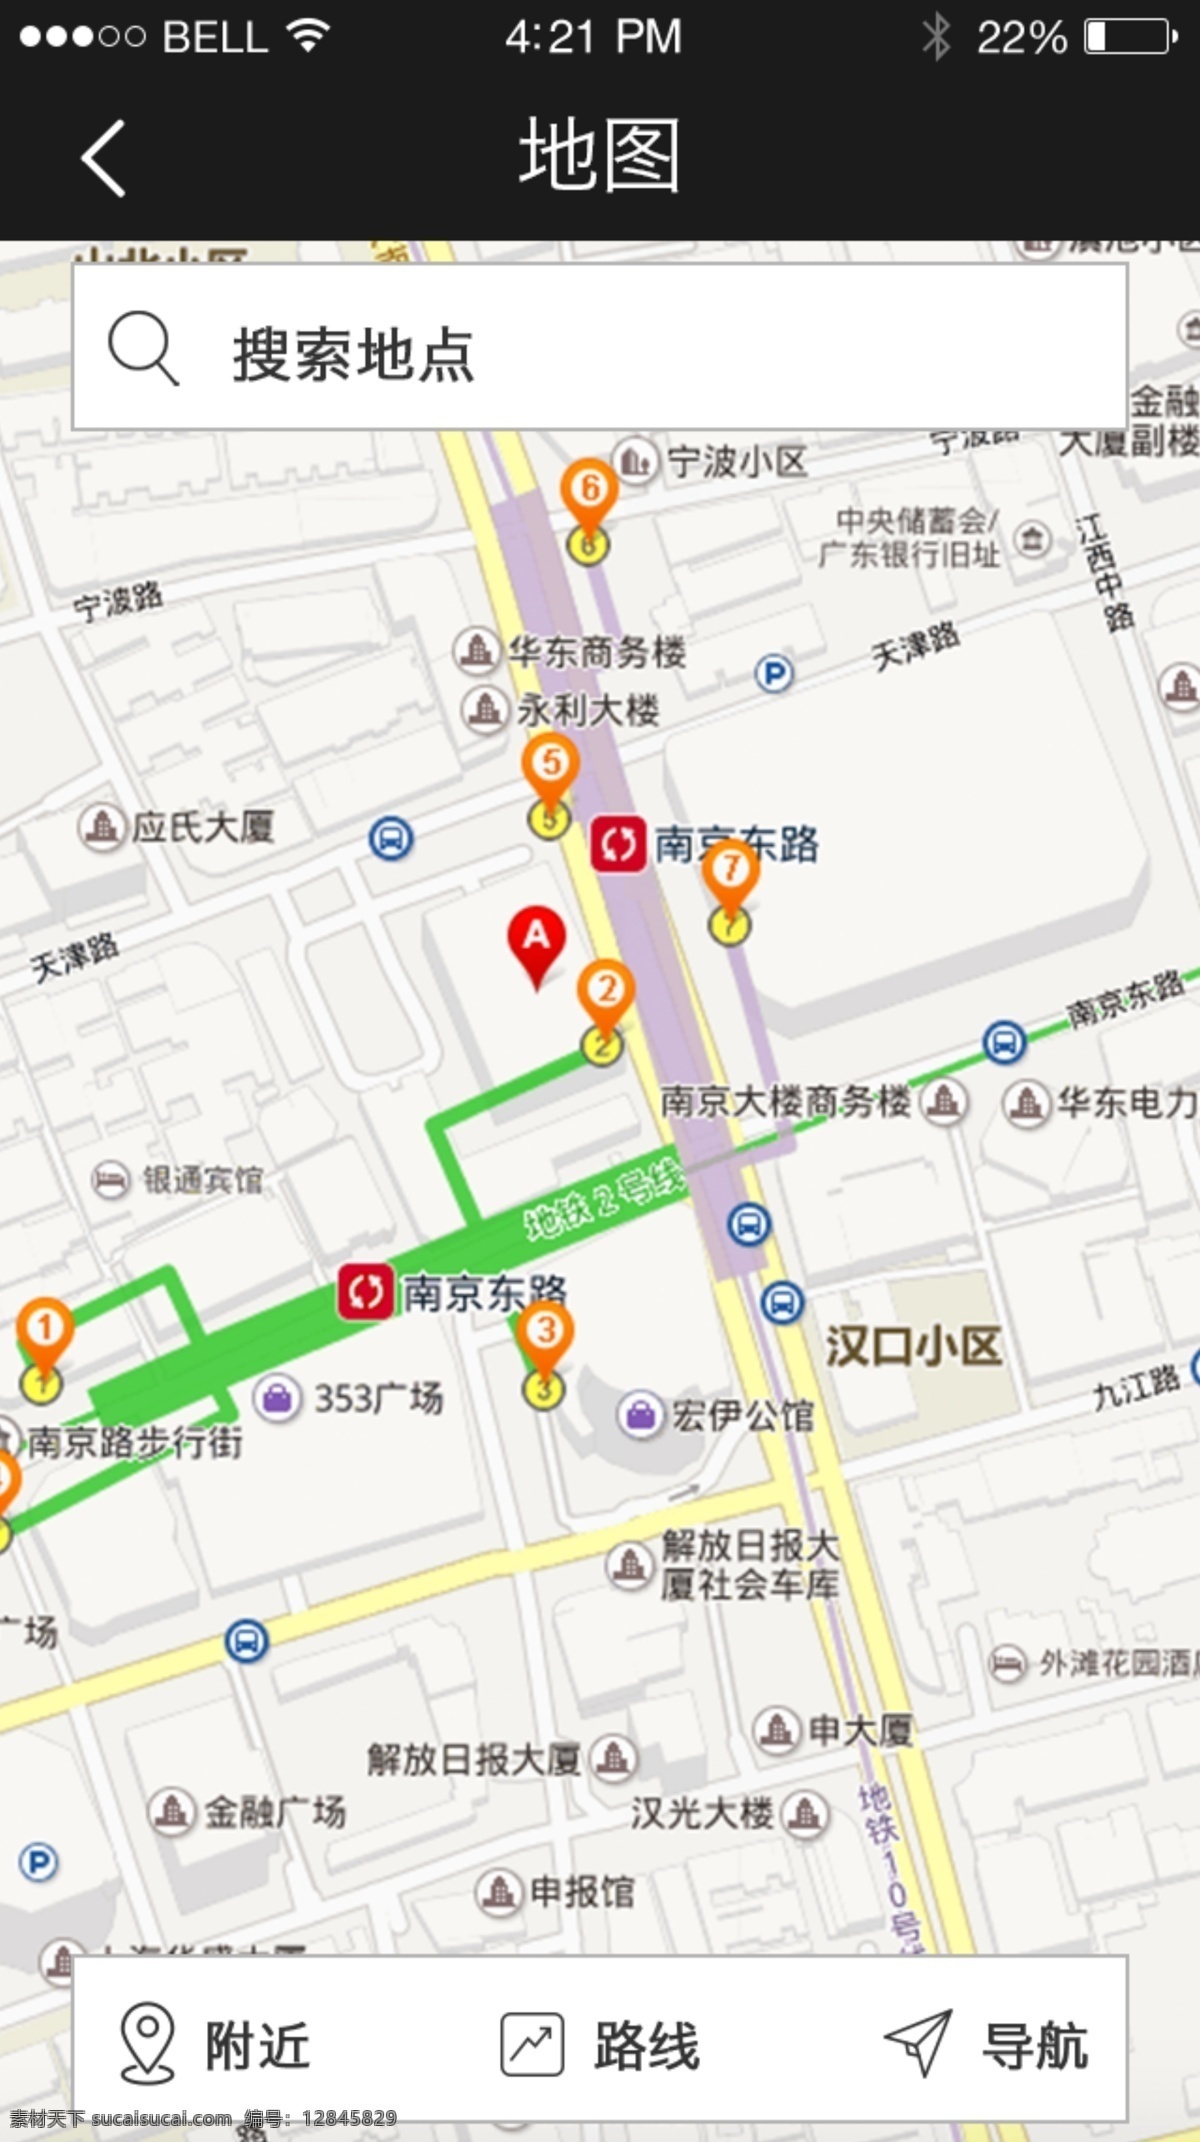 手机 移动 端 app 界面设计 酒店预定 系统 地图 酒店预定系统 导航 ui设计